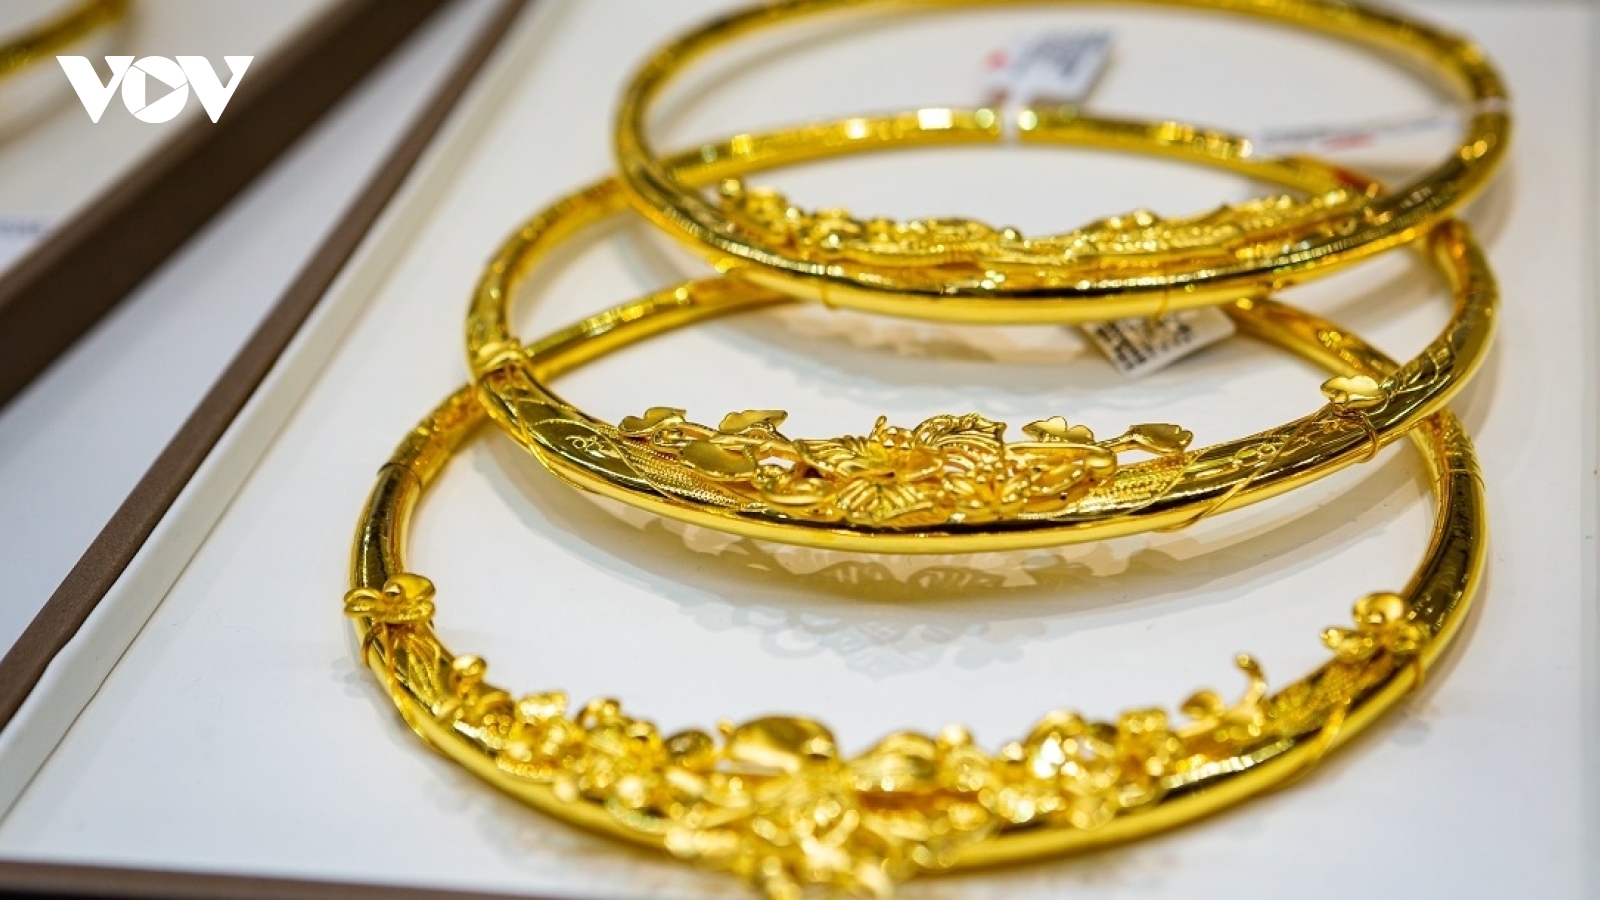 Giá vàng hôm nay 24/2: Vàng SJC tăng lên mức 78,70 triệu đồng/lượng